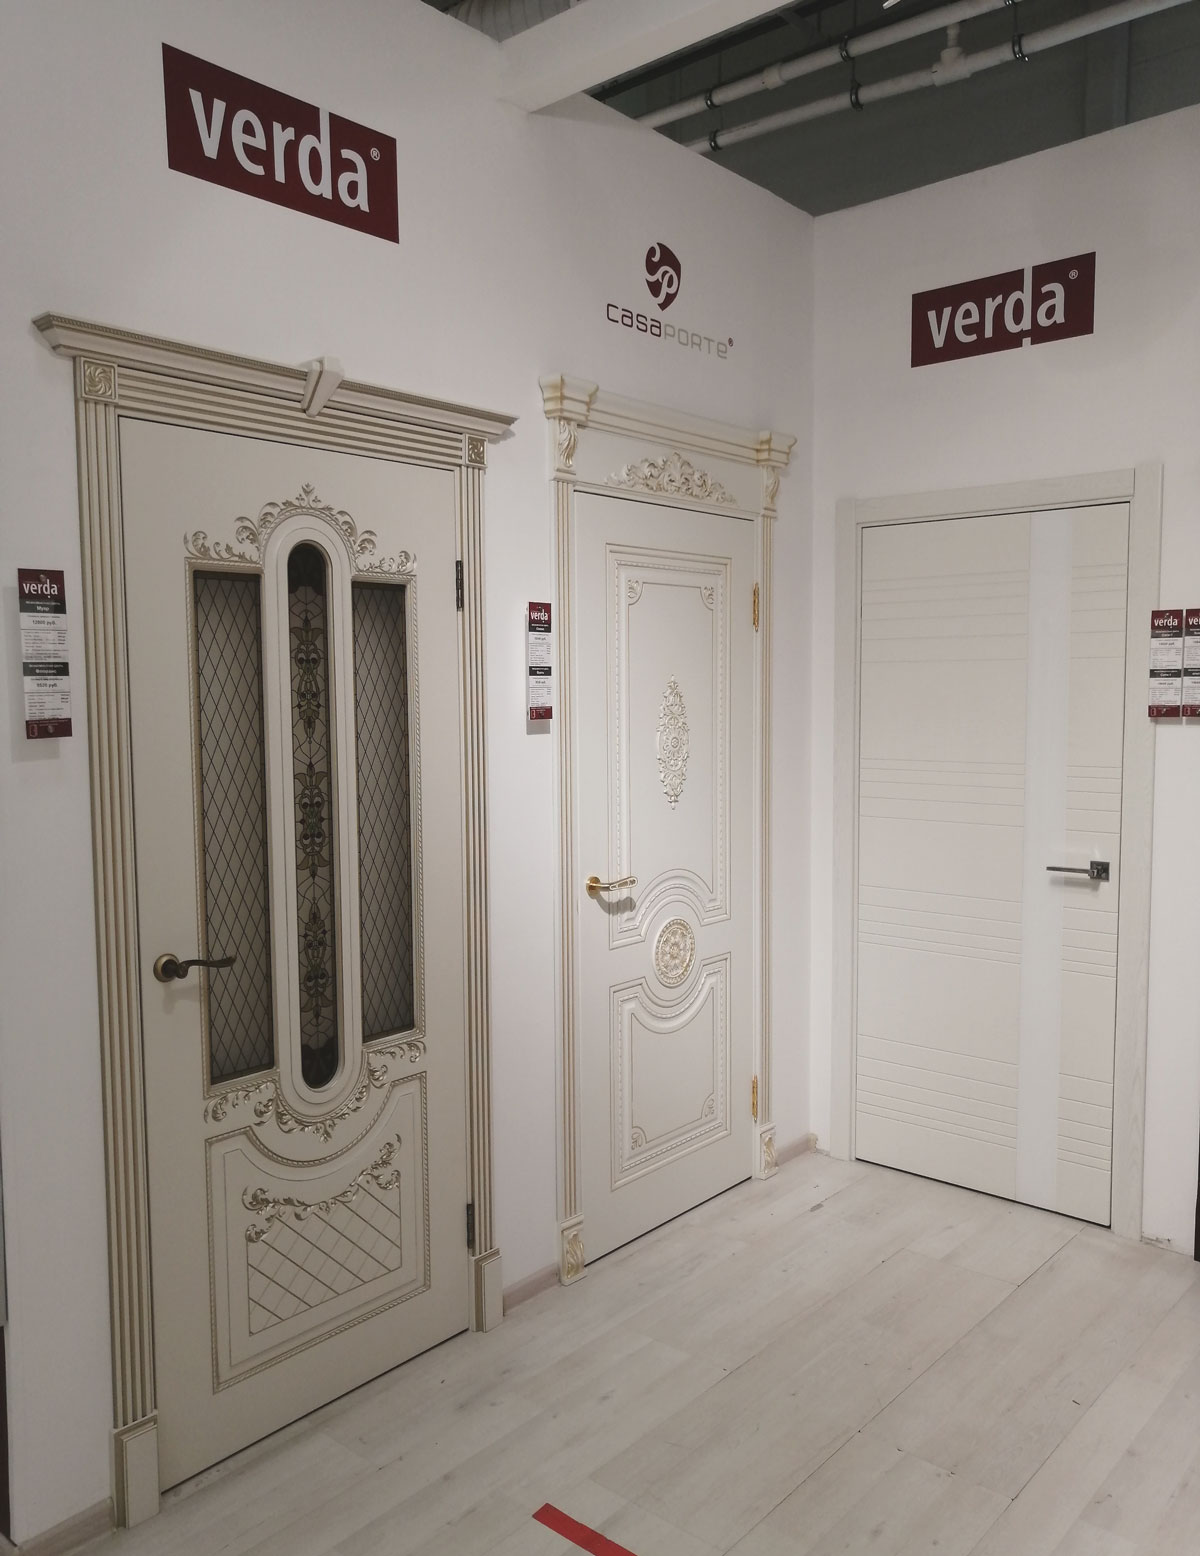 Самый Большой Магазин Дверей В Москве